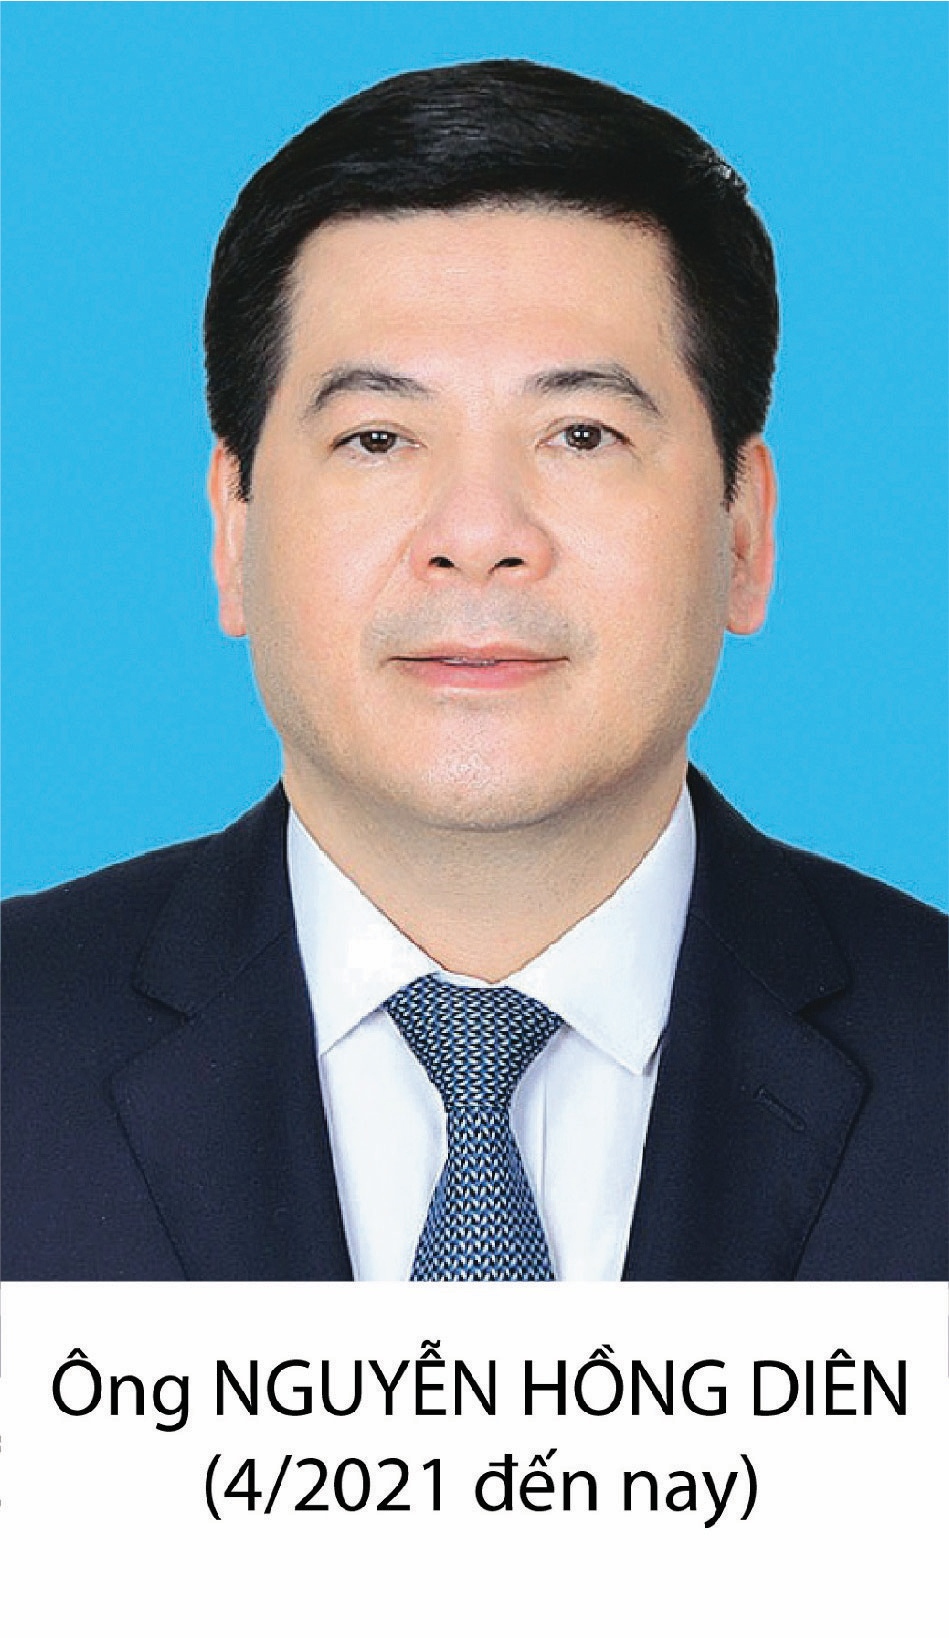 Nguyen Hong Dien